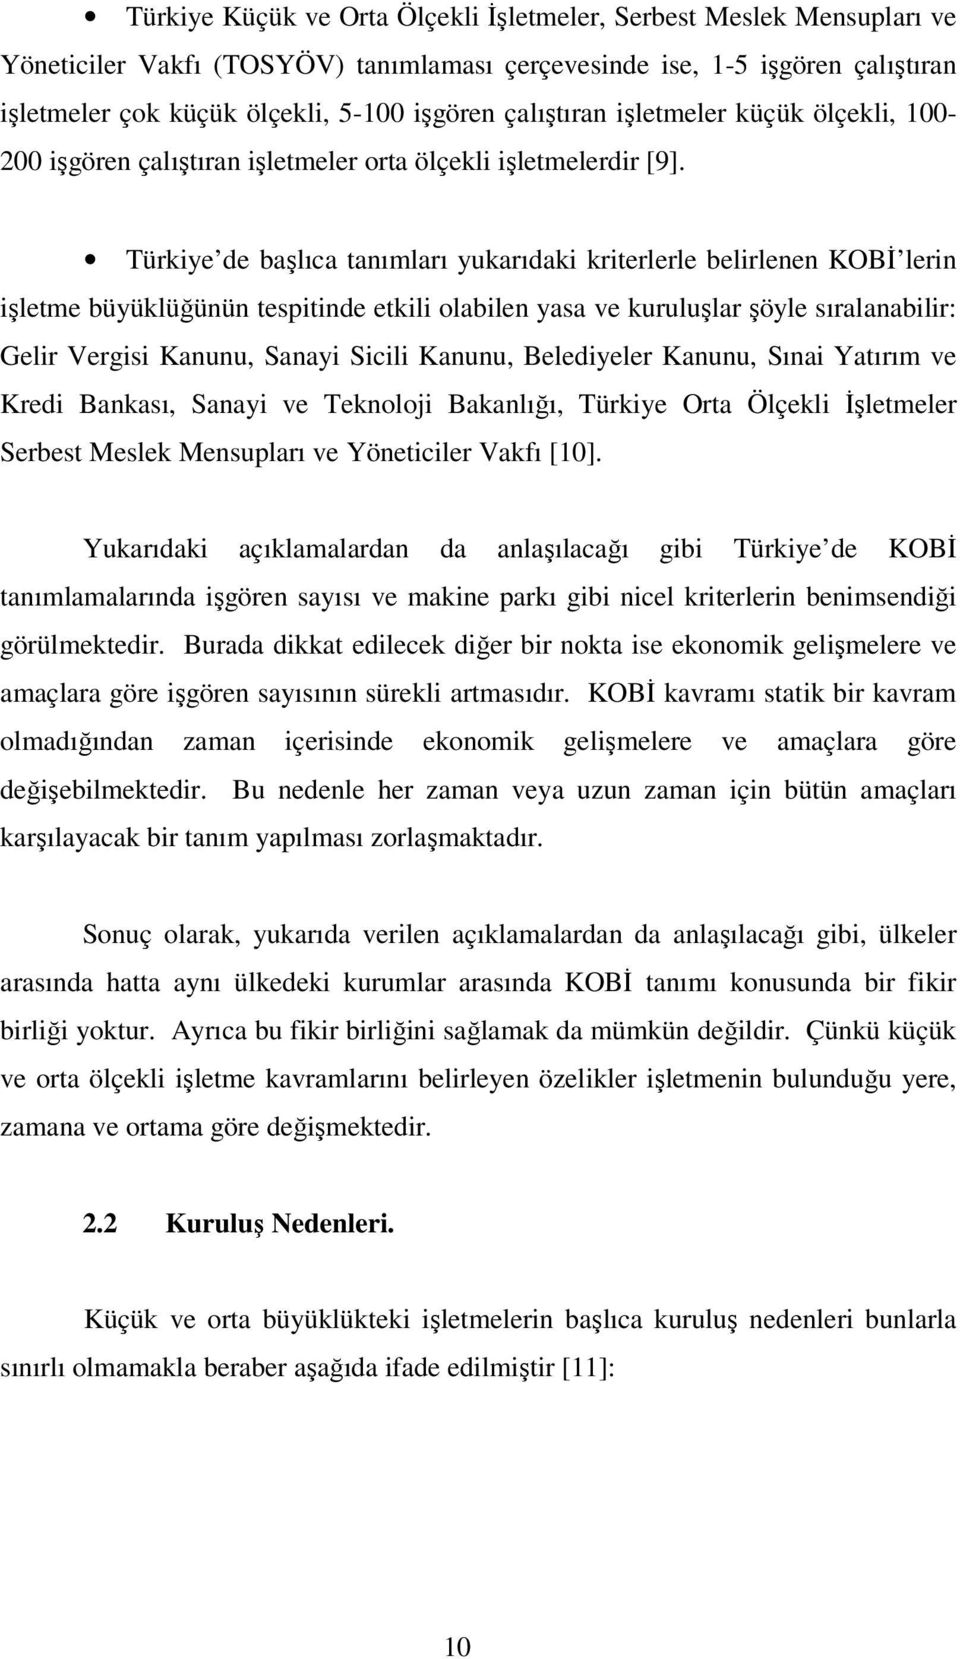 Türkiye de başlıca tanımları yukarıdaki kriterlerle belirlenen KOBİ lerin işletme büyüklüğünün tespitinde etkili olabilen yasa ve kuruluşlar şöyle sıralanabilir: Gelir Vergisi Kanunu, Sanayi Sicili